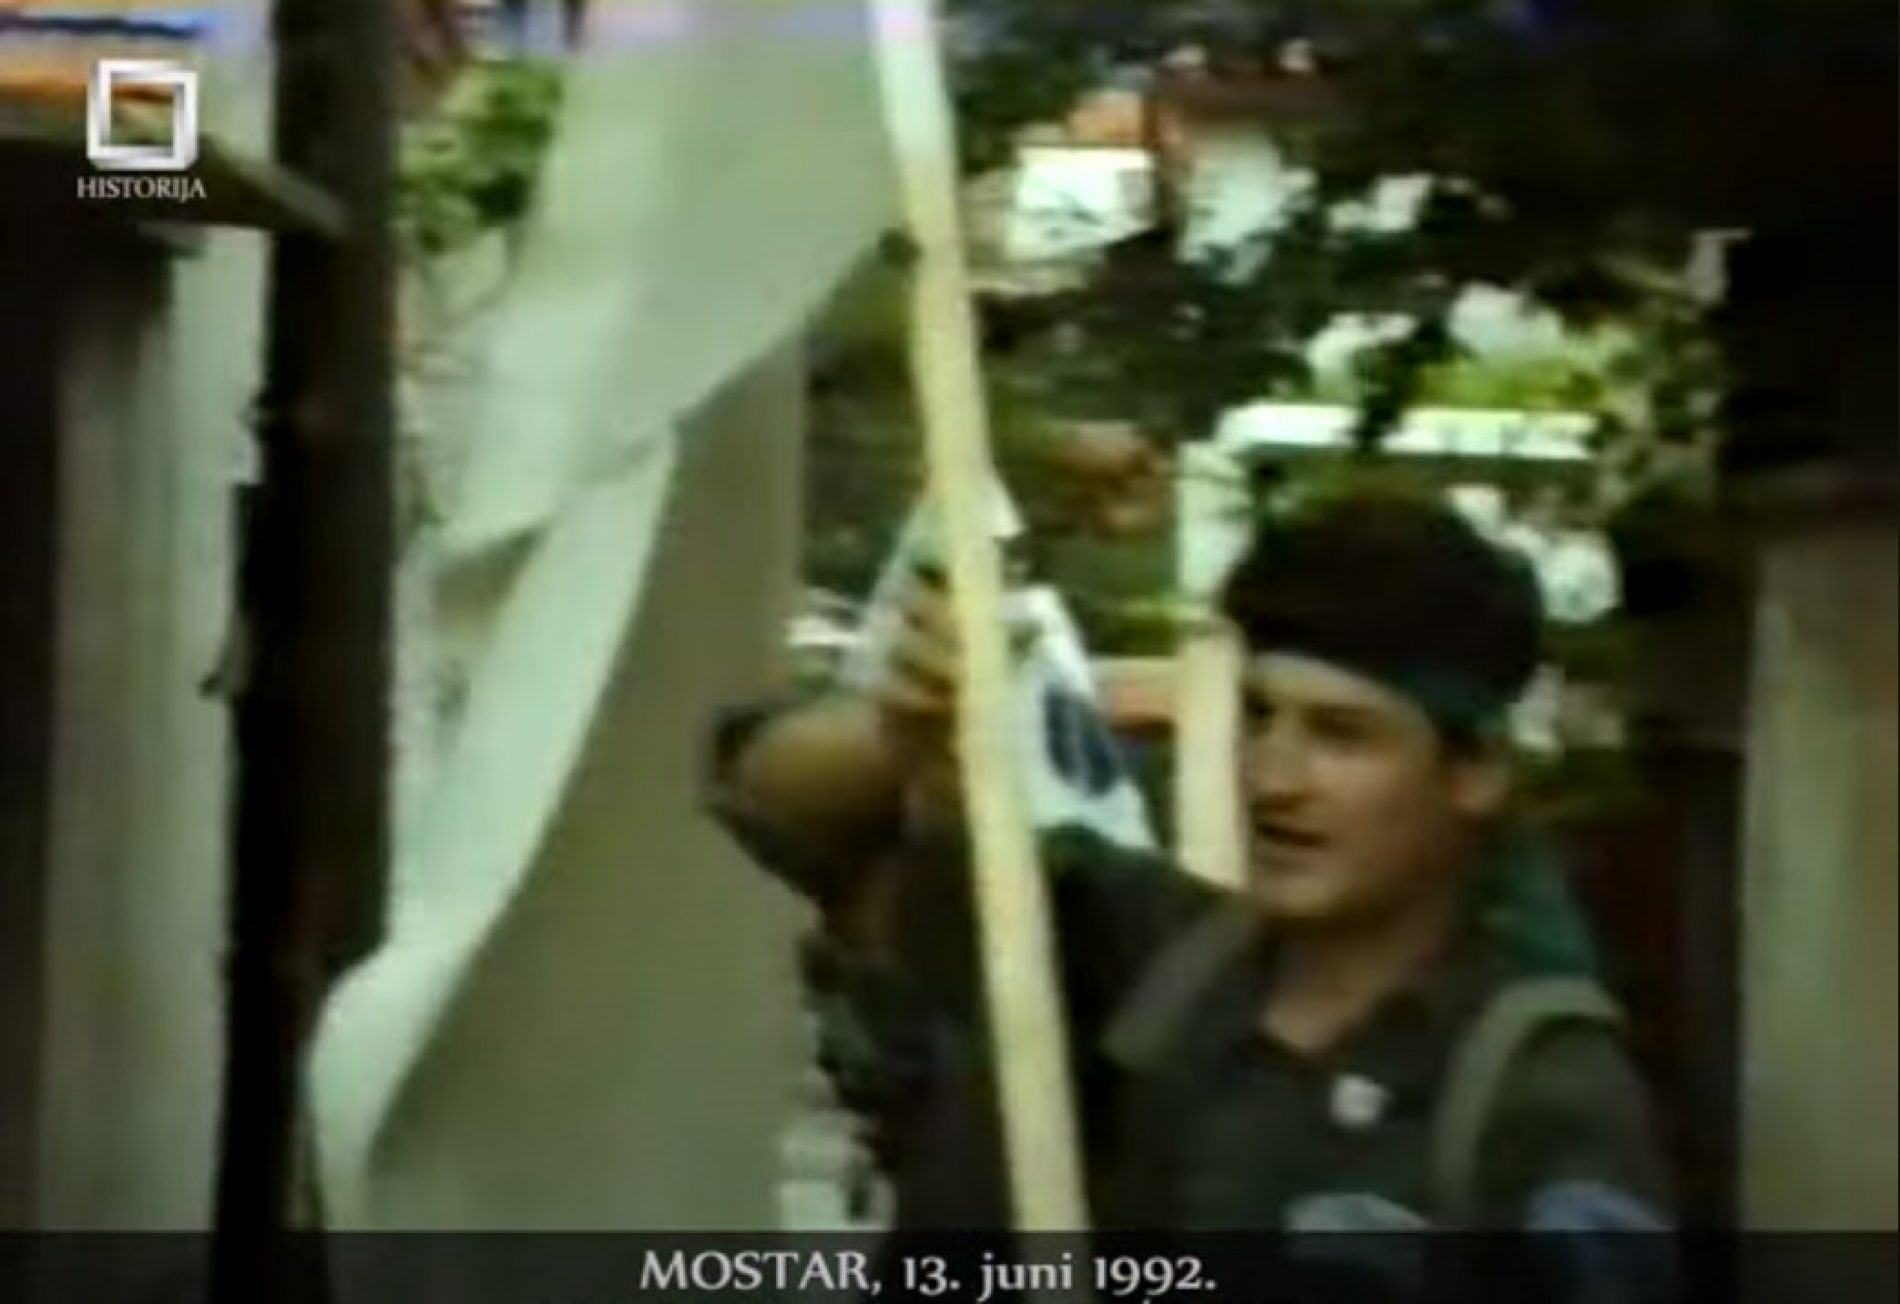 Forsiranje Neretve i oslobađanje Mostara – 12. i 13. juni 1992.